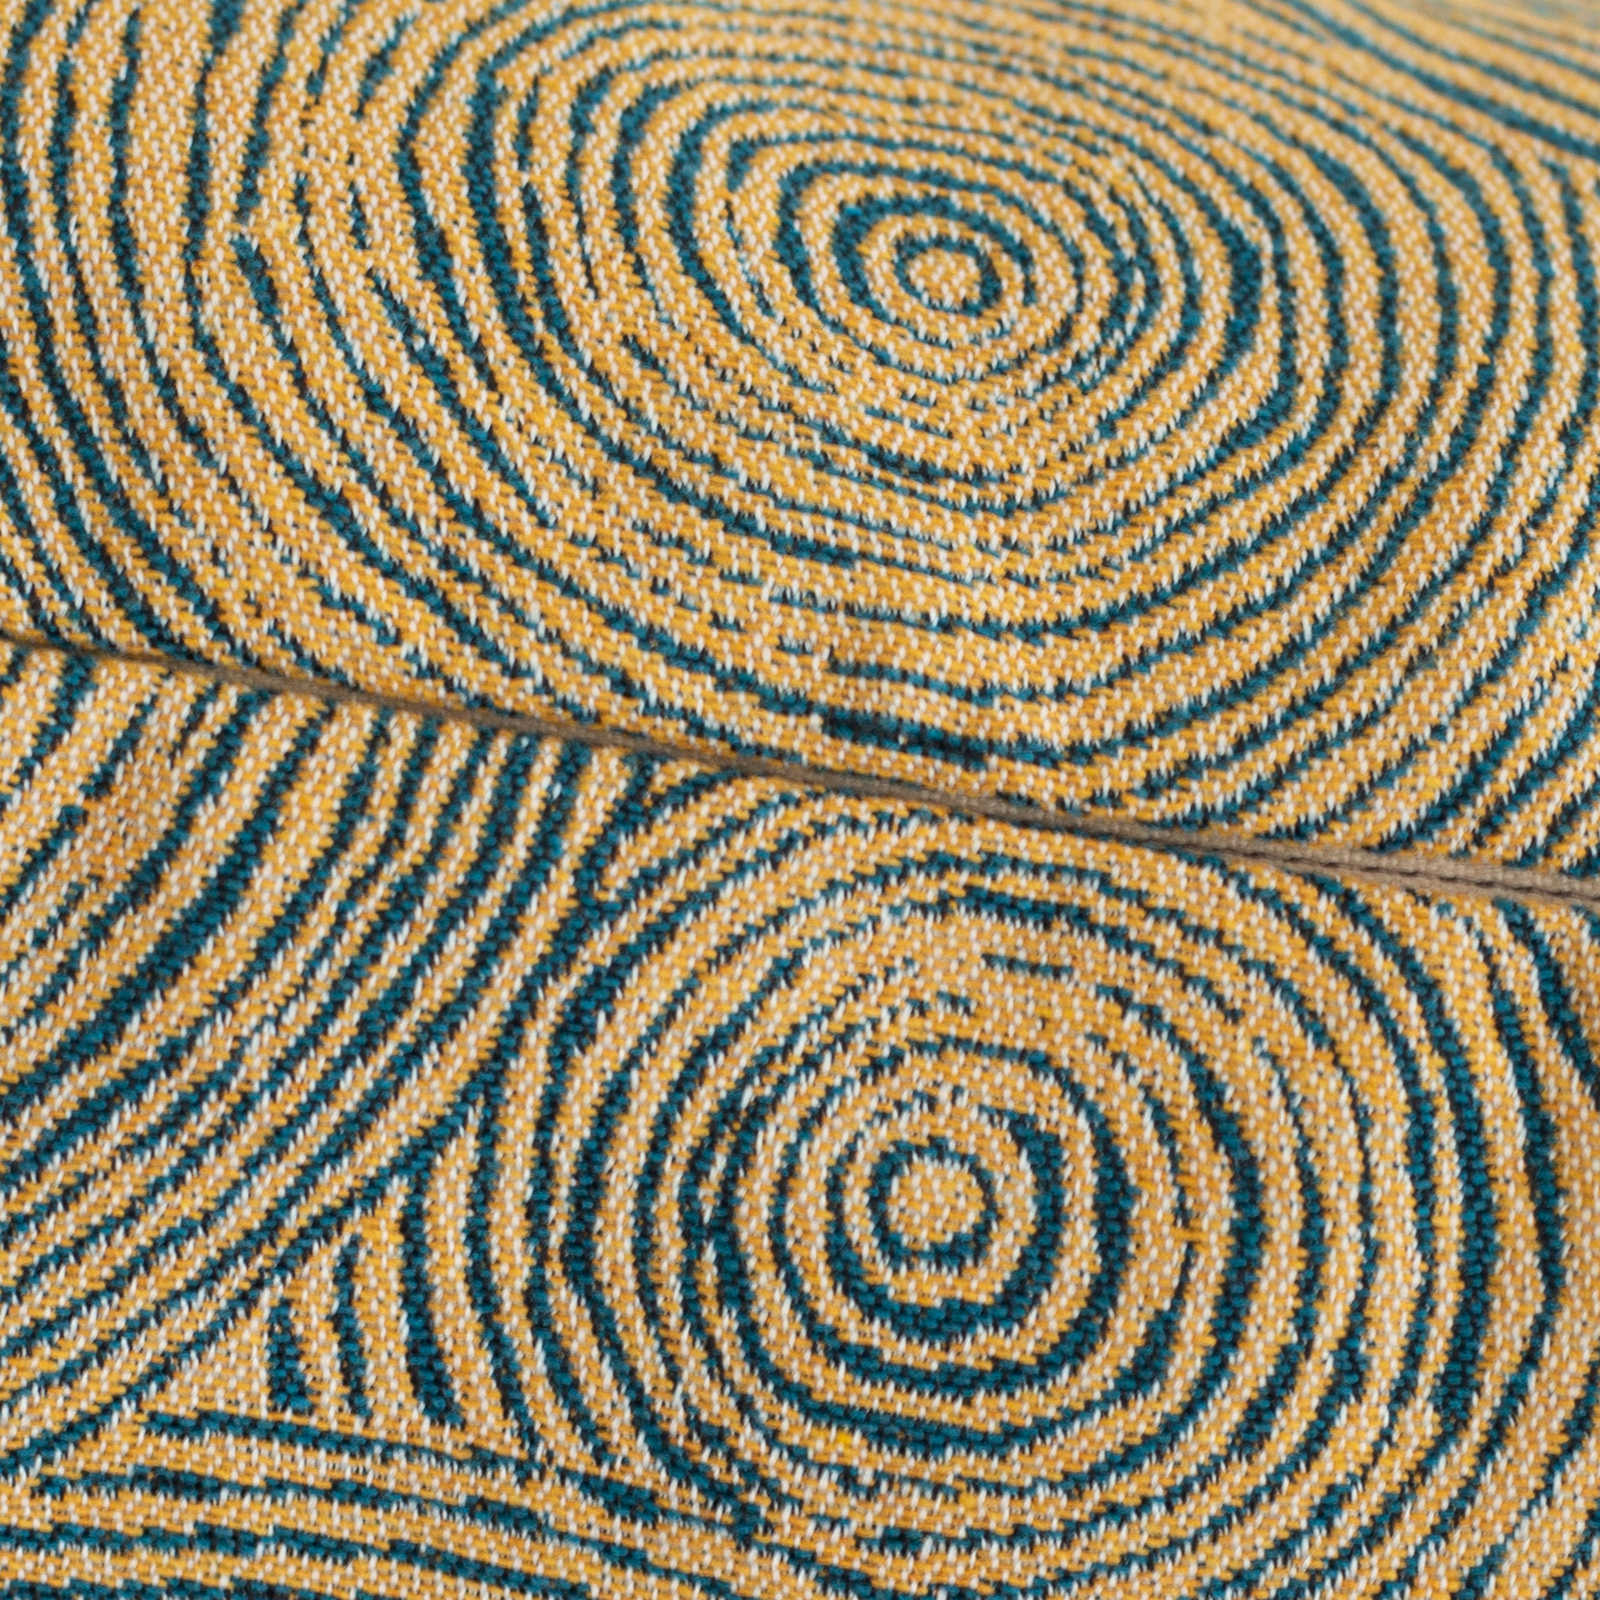             Cushion Cover Blue-Yellow "Circles Cape Town», 45x45cm
        